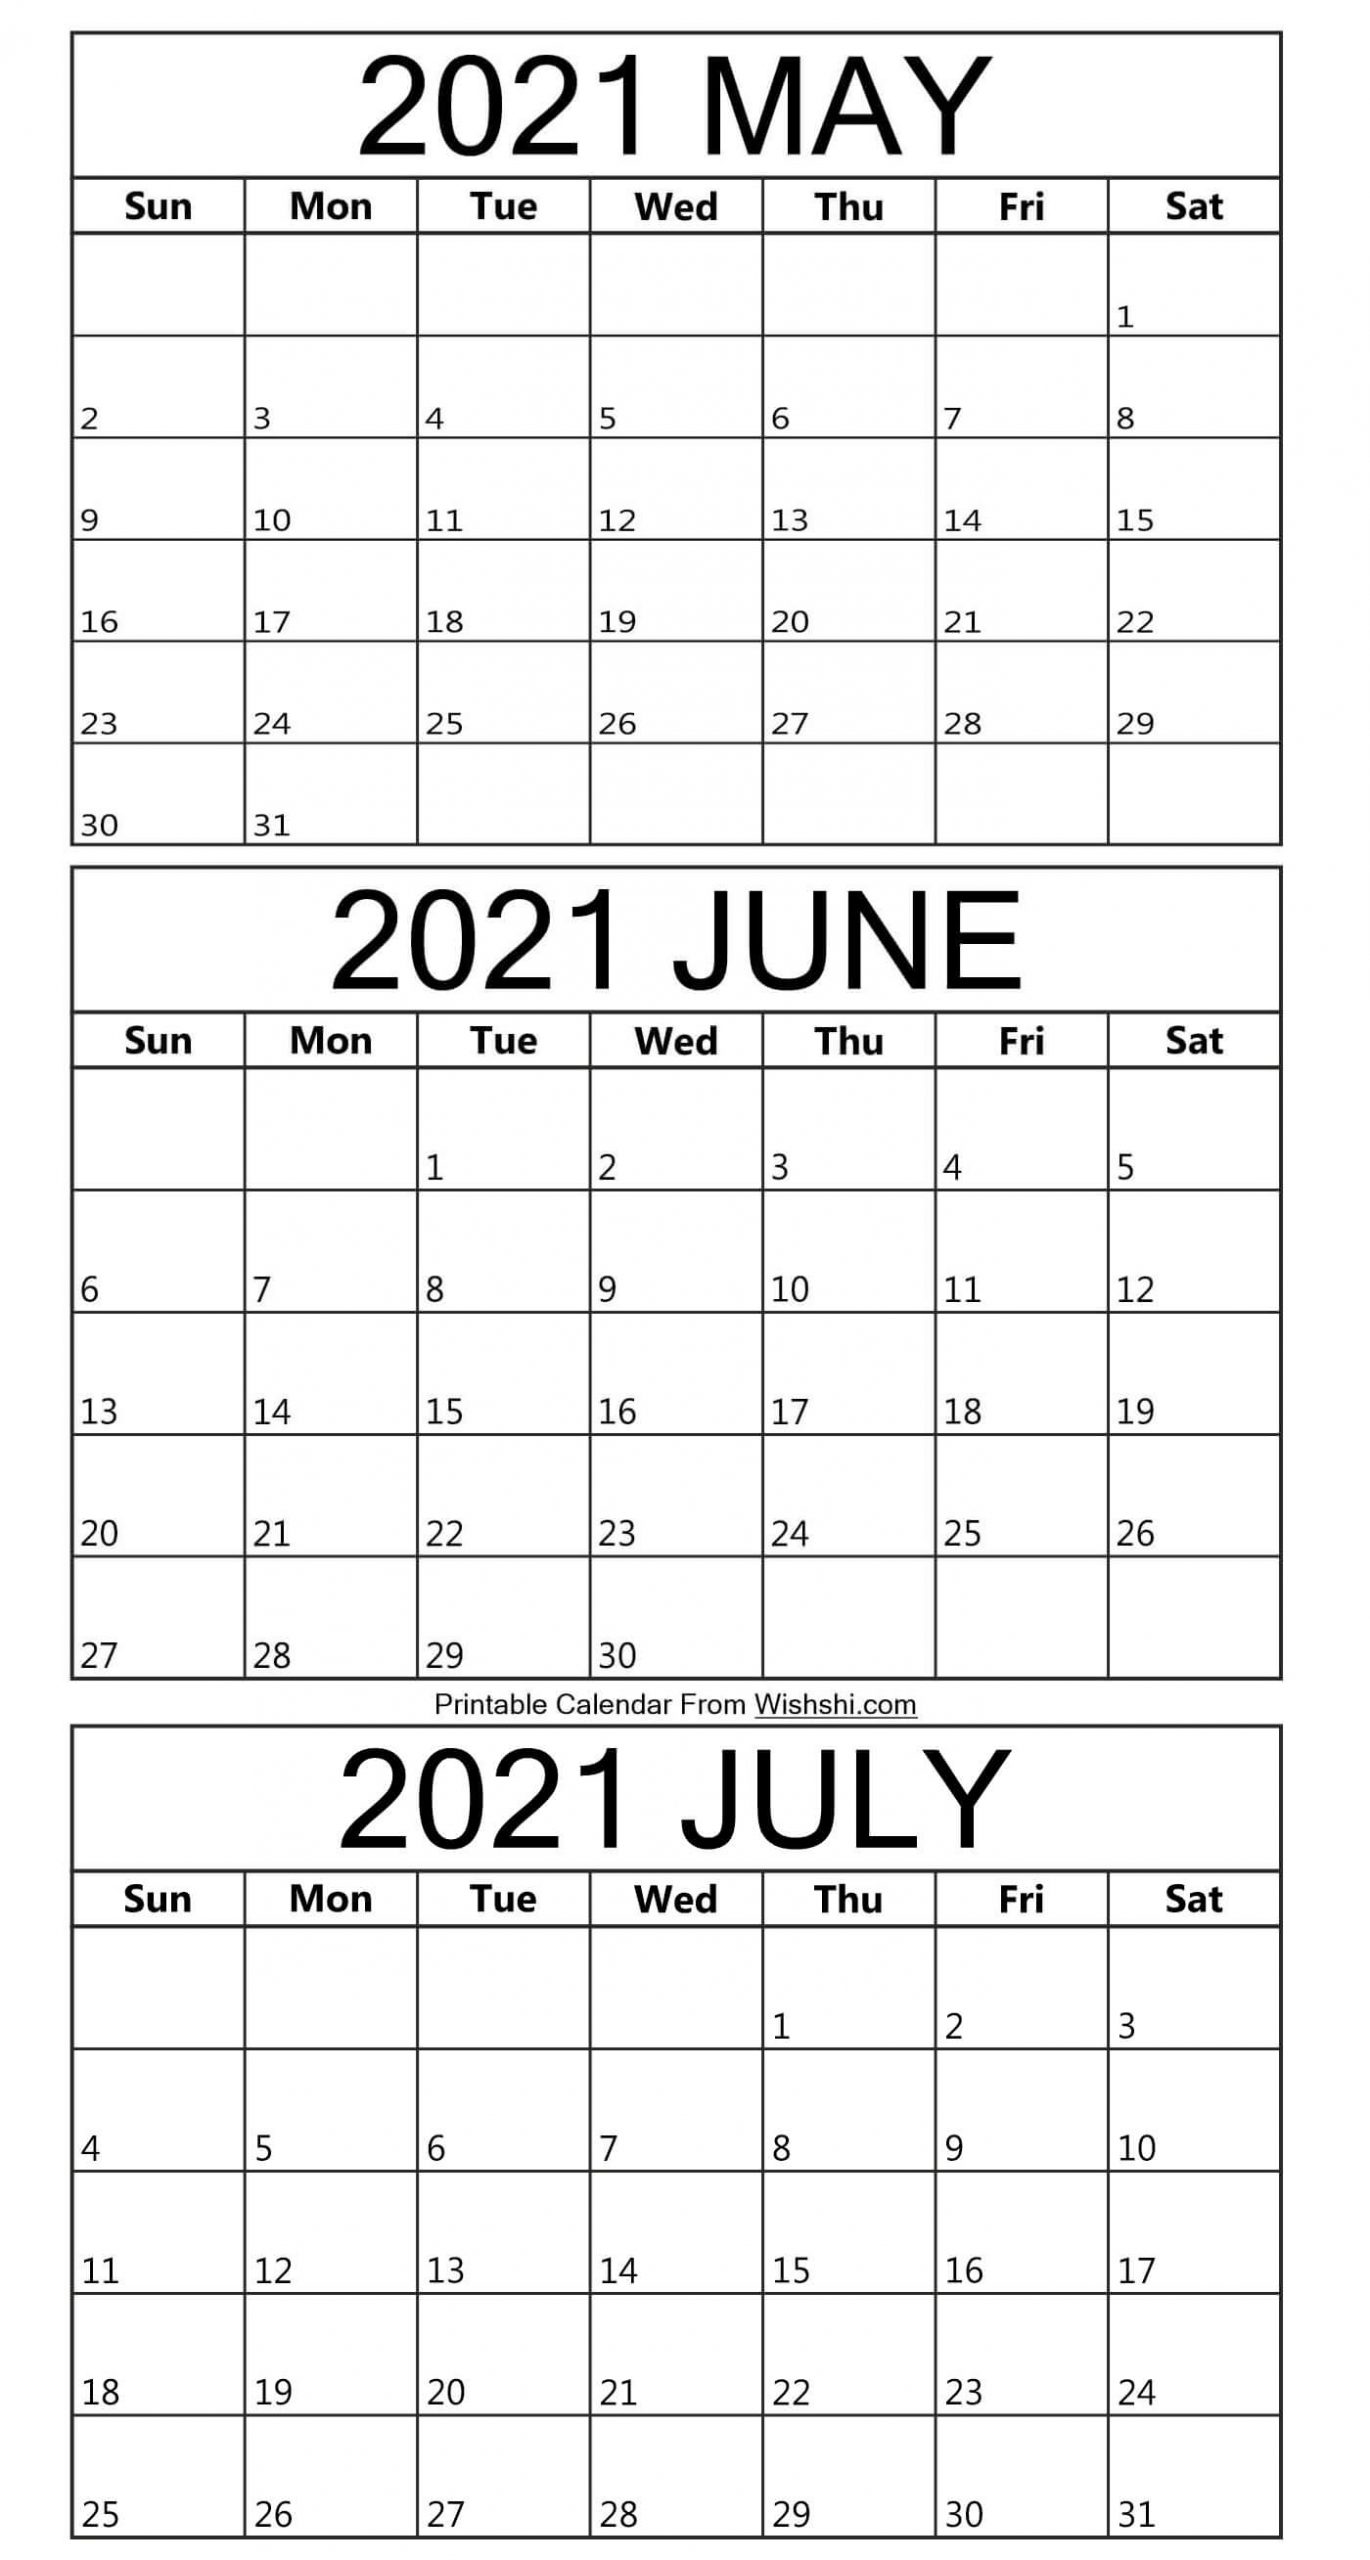 Printable May To July 2021 Calendar - Free Printable Calendars Printable May To July 2021 Calendar May-July 2021 Calendar